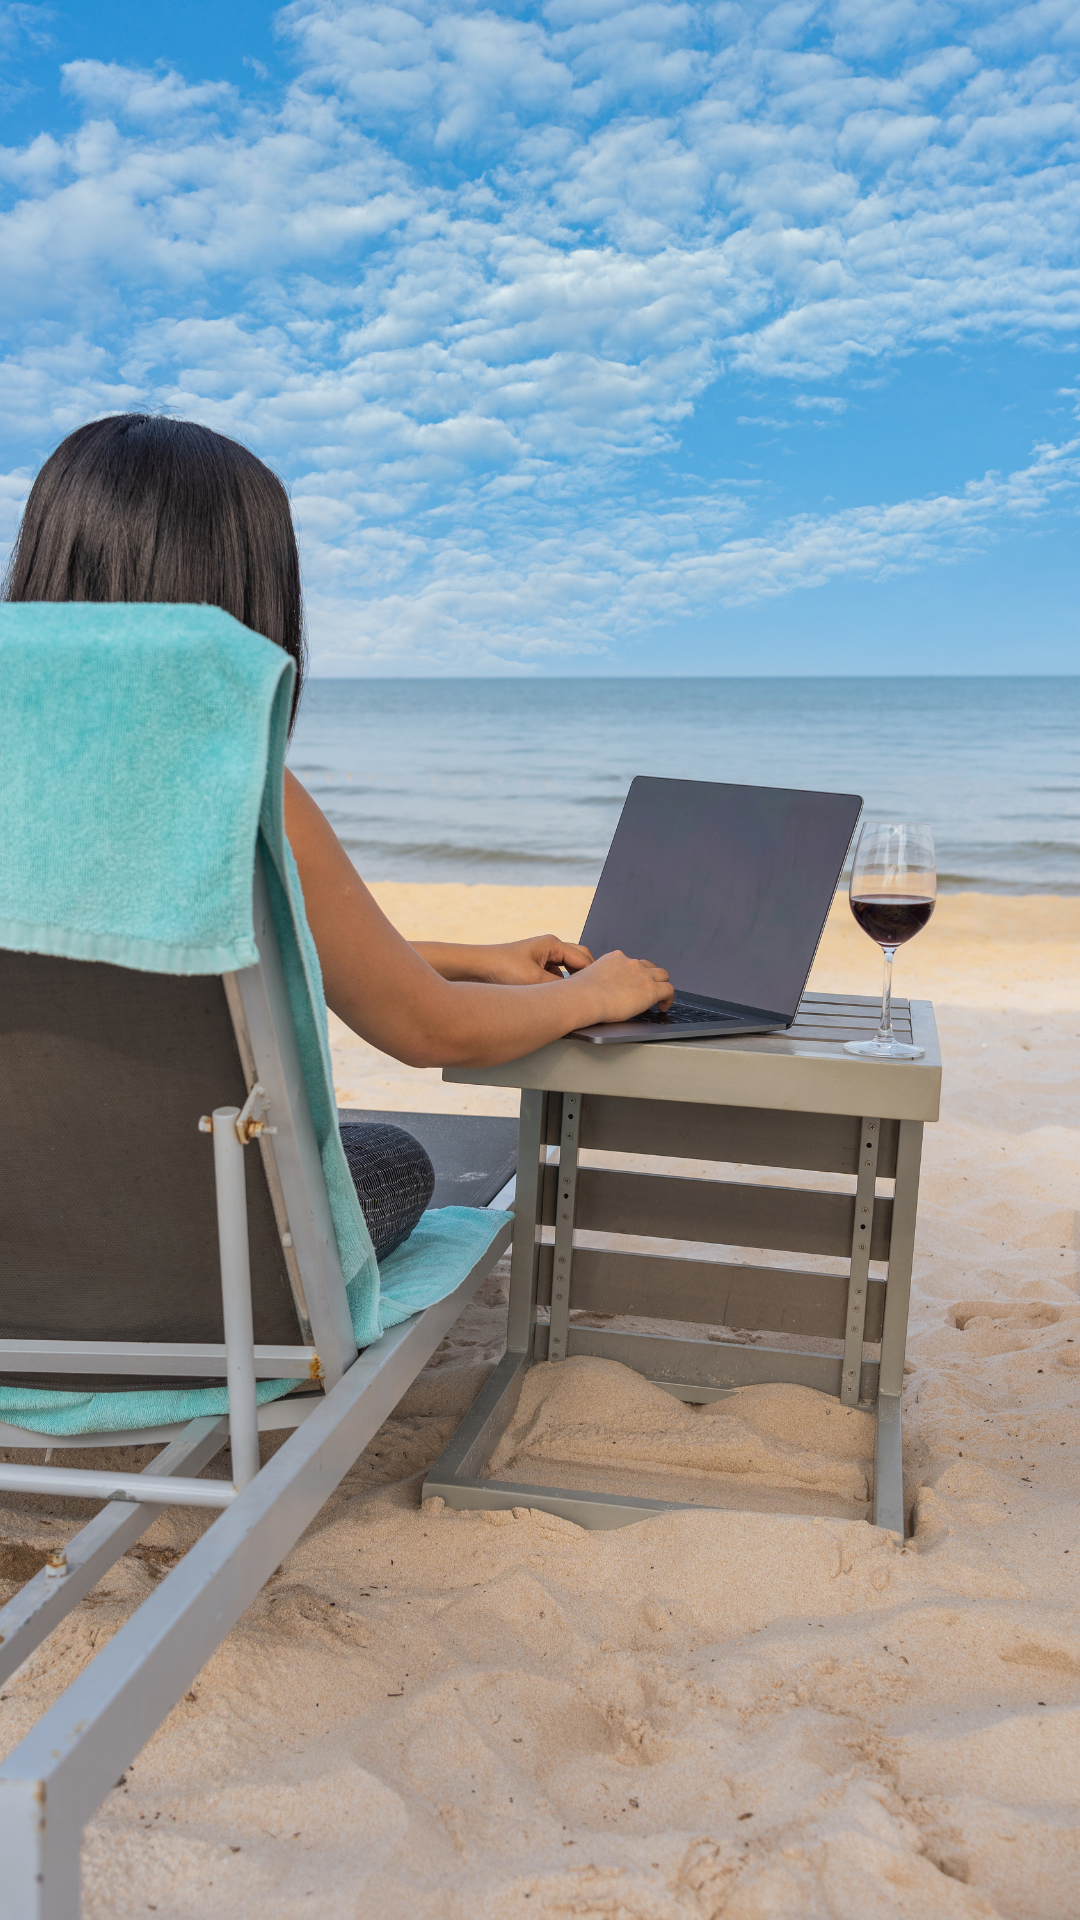 Frau sitzend auf einem Liegestuhl am Strand mit einem Laptop